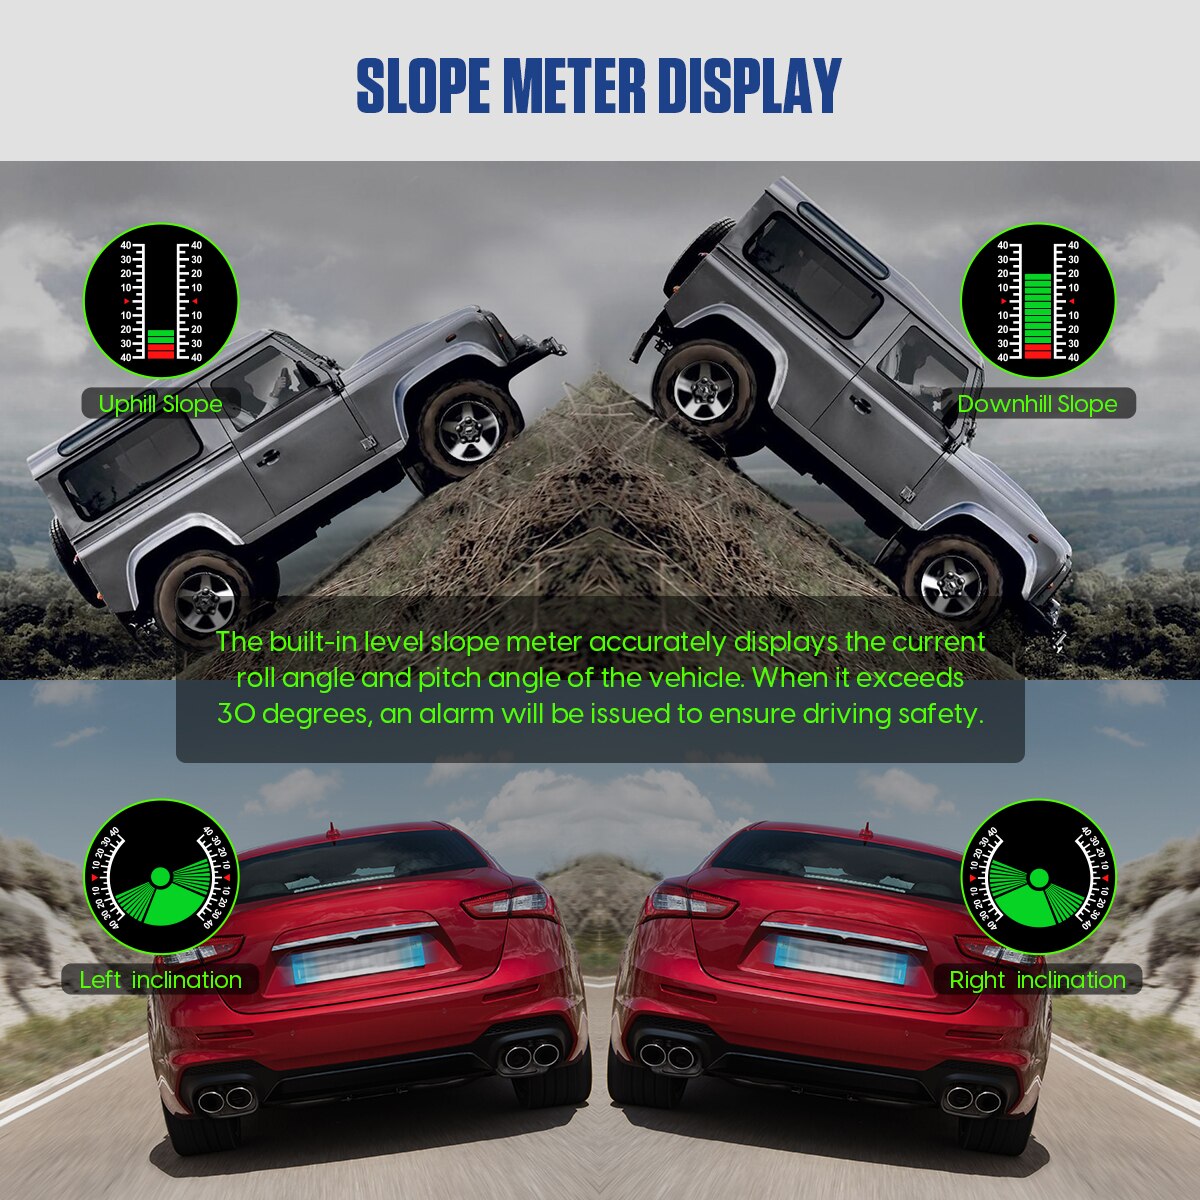 Mr cartool  m60 bilhastighedsmåler gps-hastighed hældningsmåler off-road bilhældning digital temperaturmåler automotive intelligent system